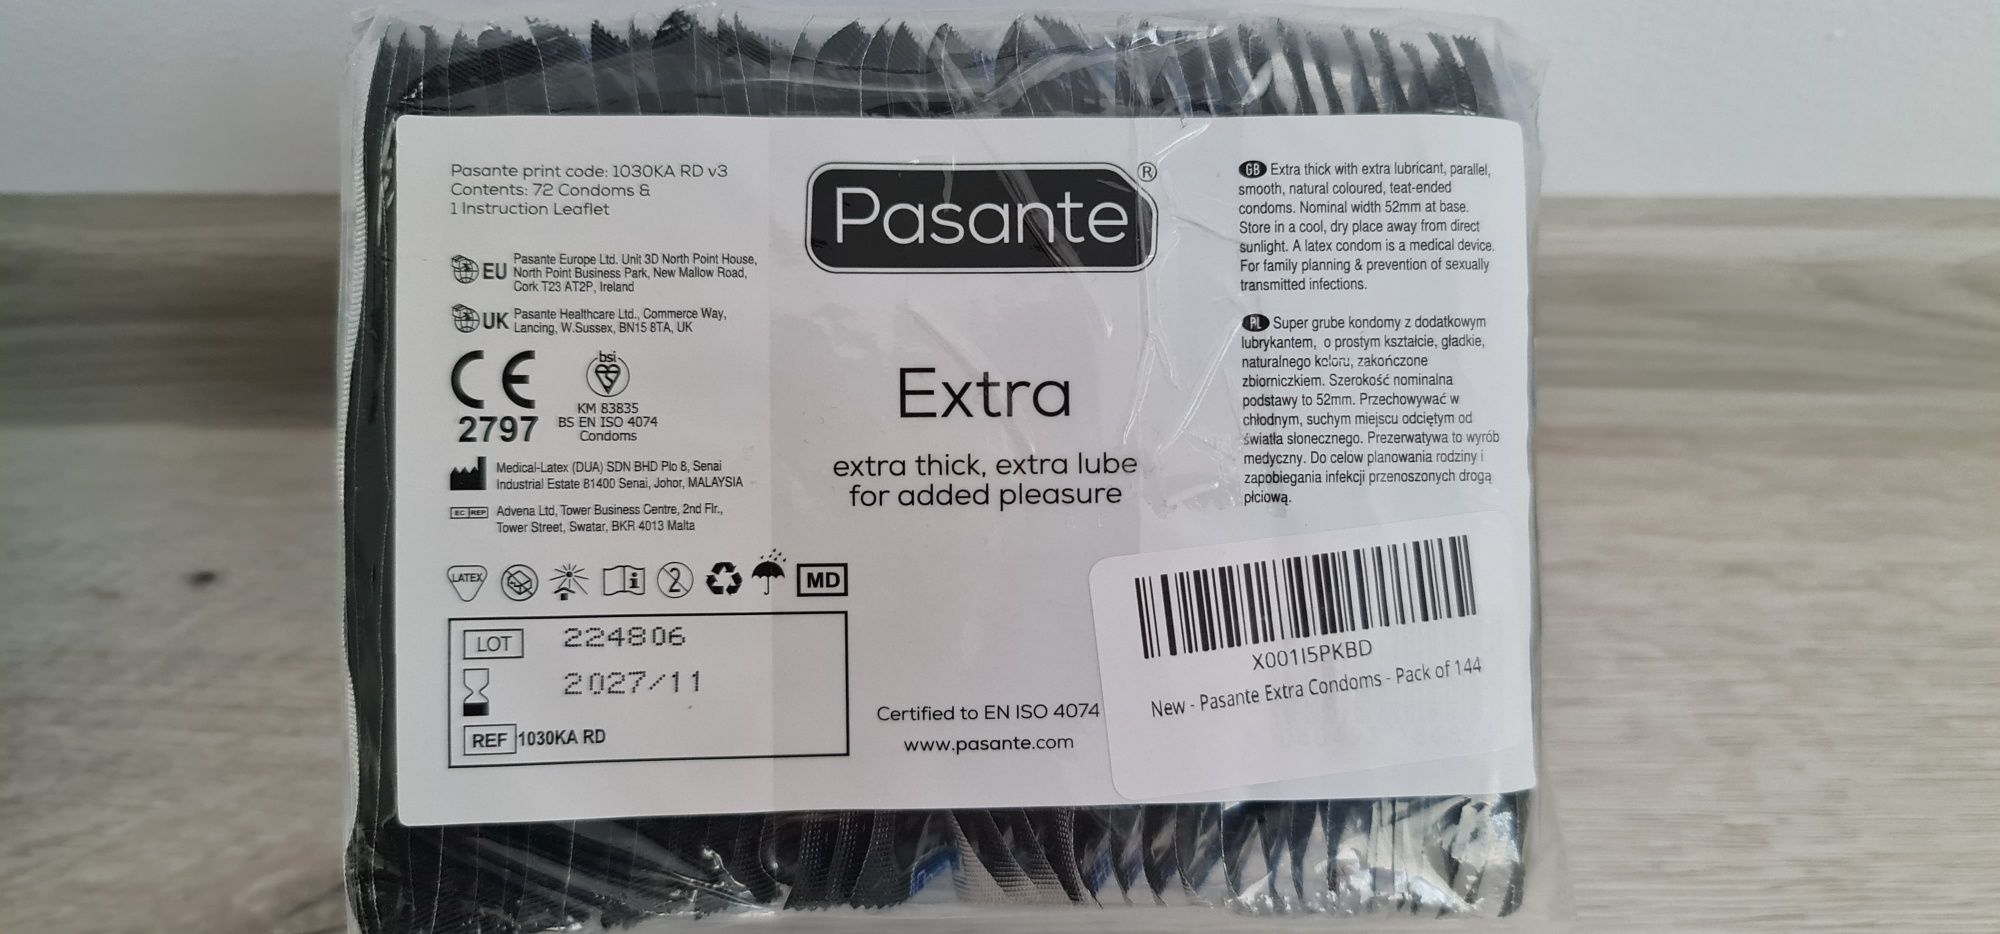 Prezervative Pasante x 144 bucati
Pasante Regular Classic sunt